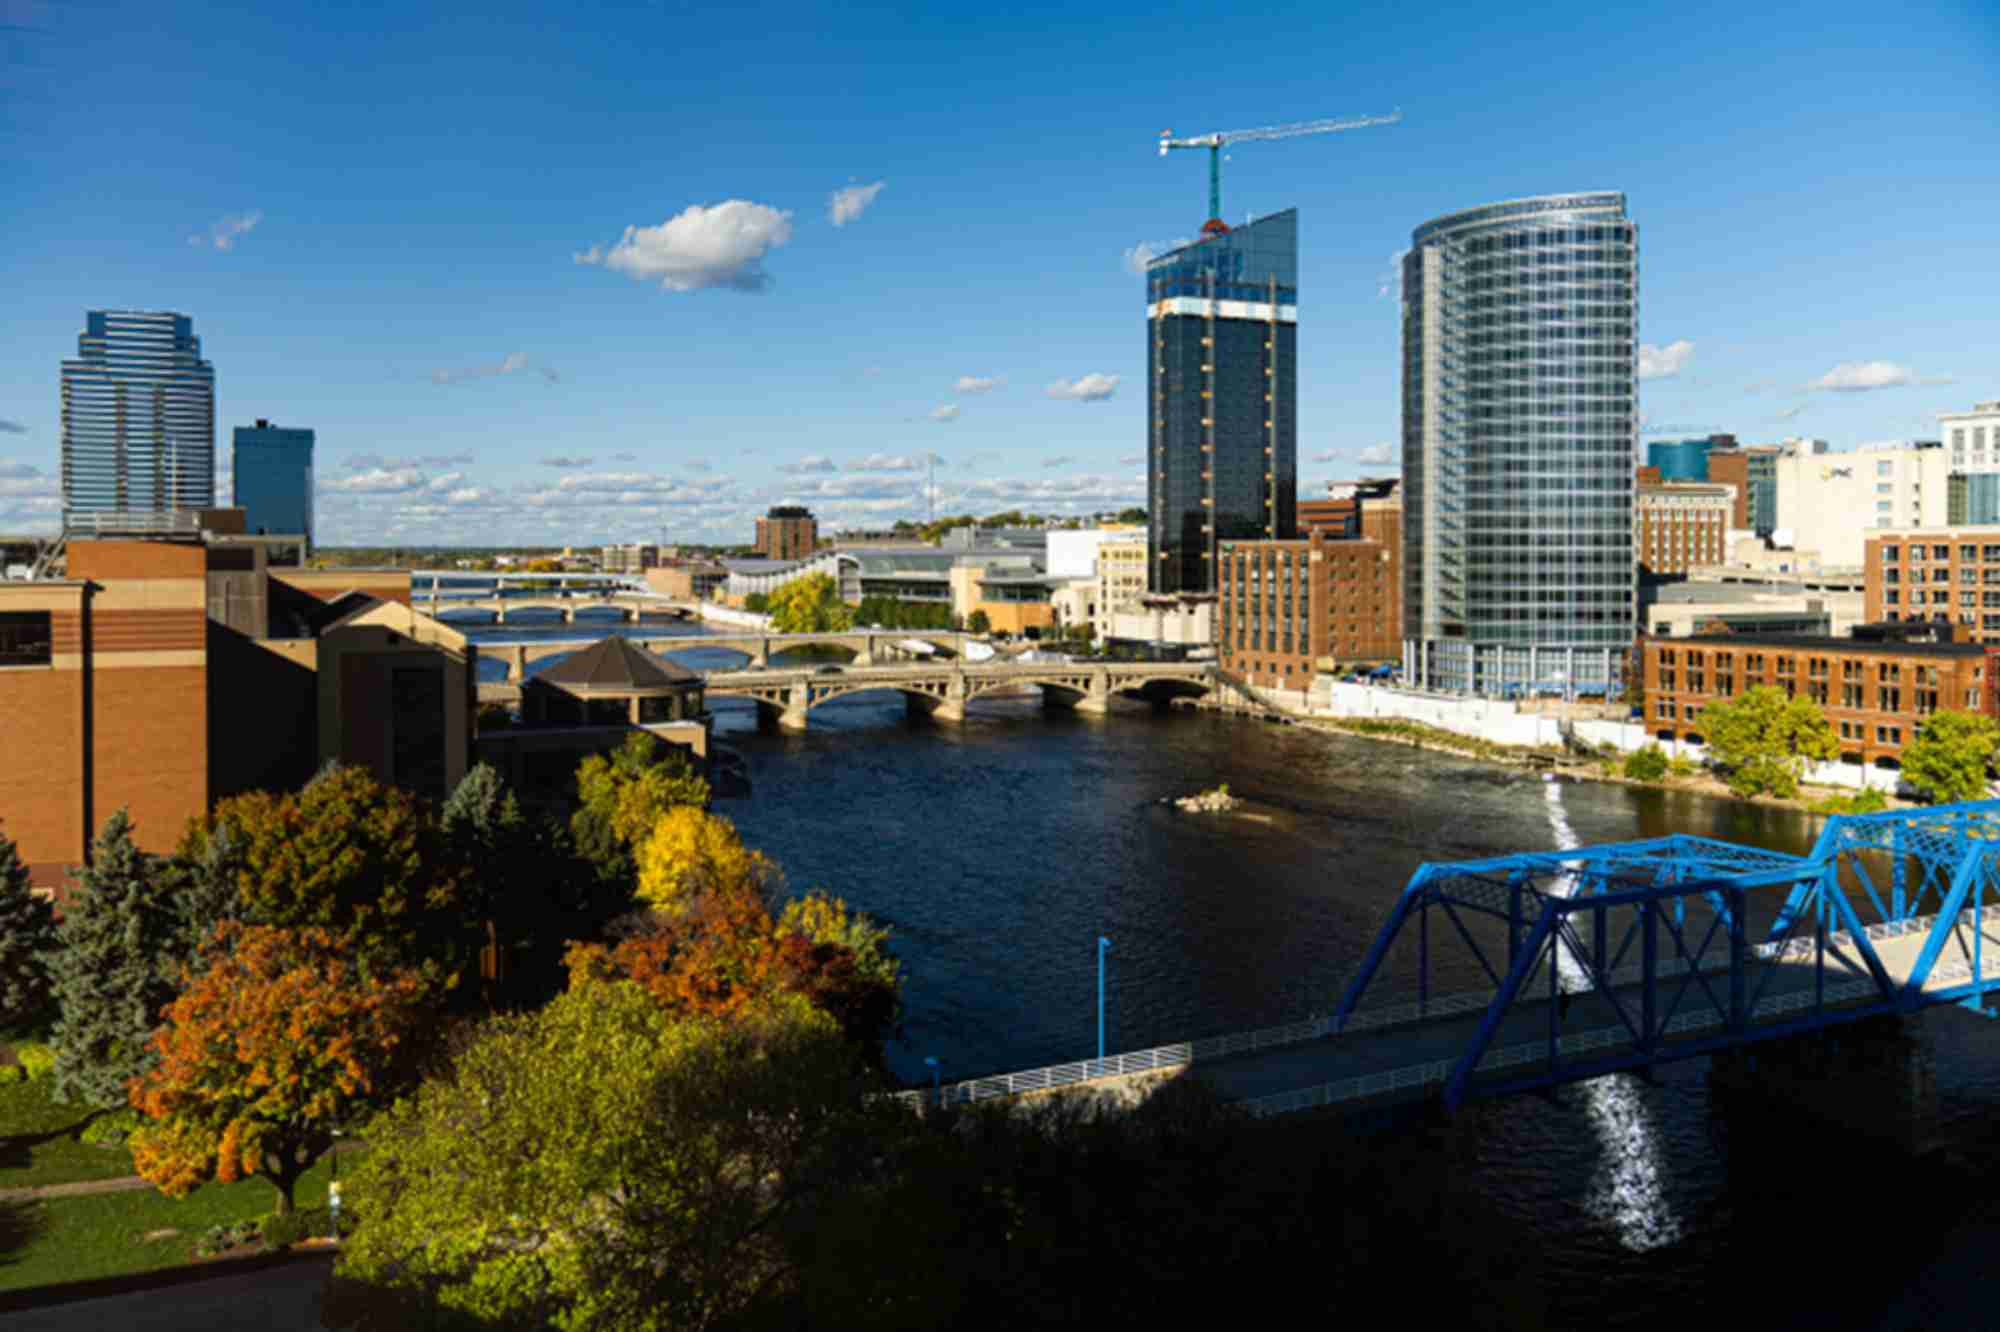 Grand River and Grand Rapids skyline